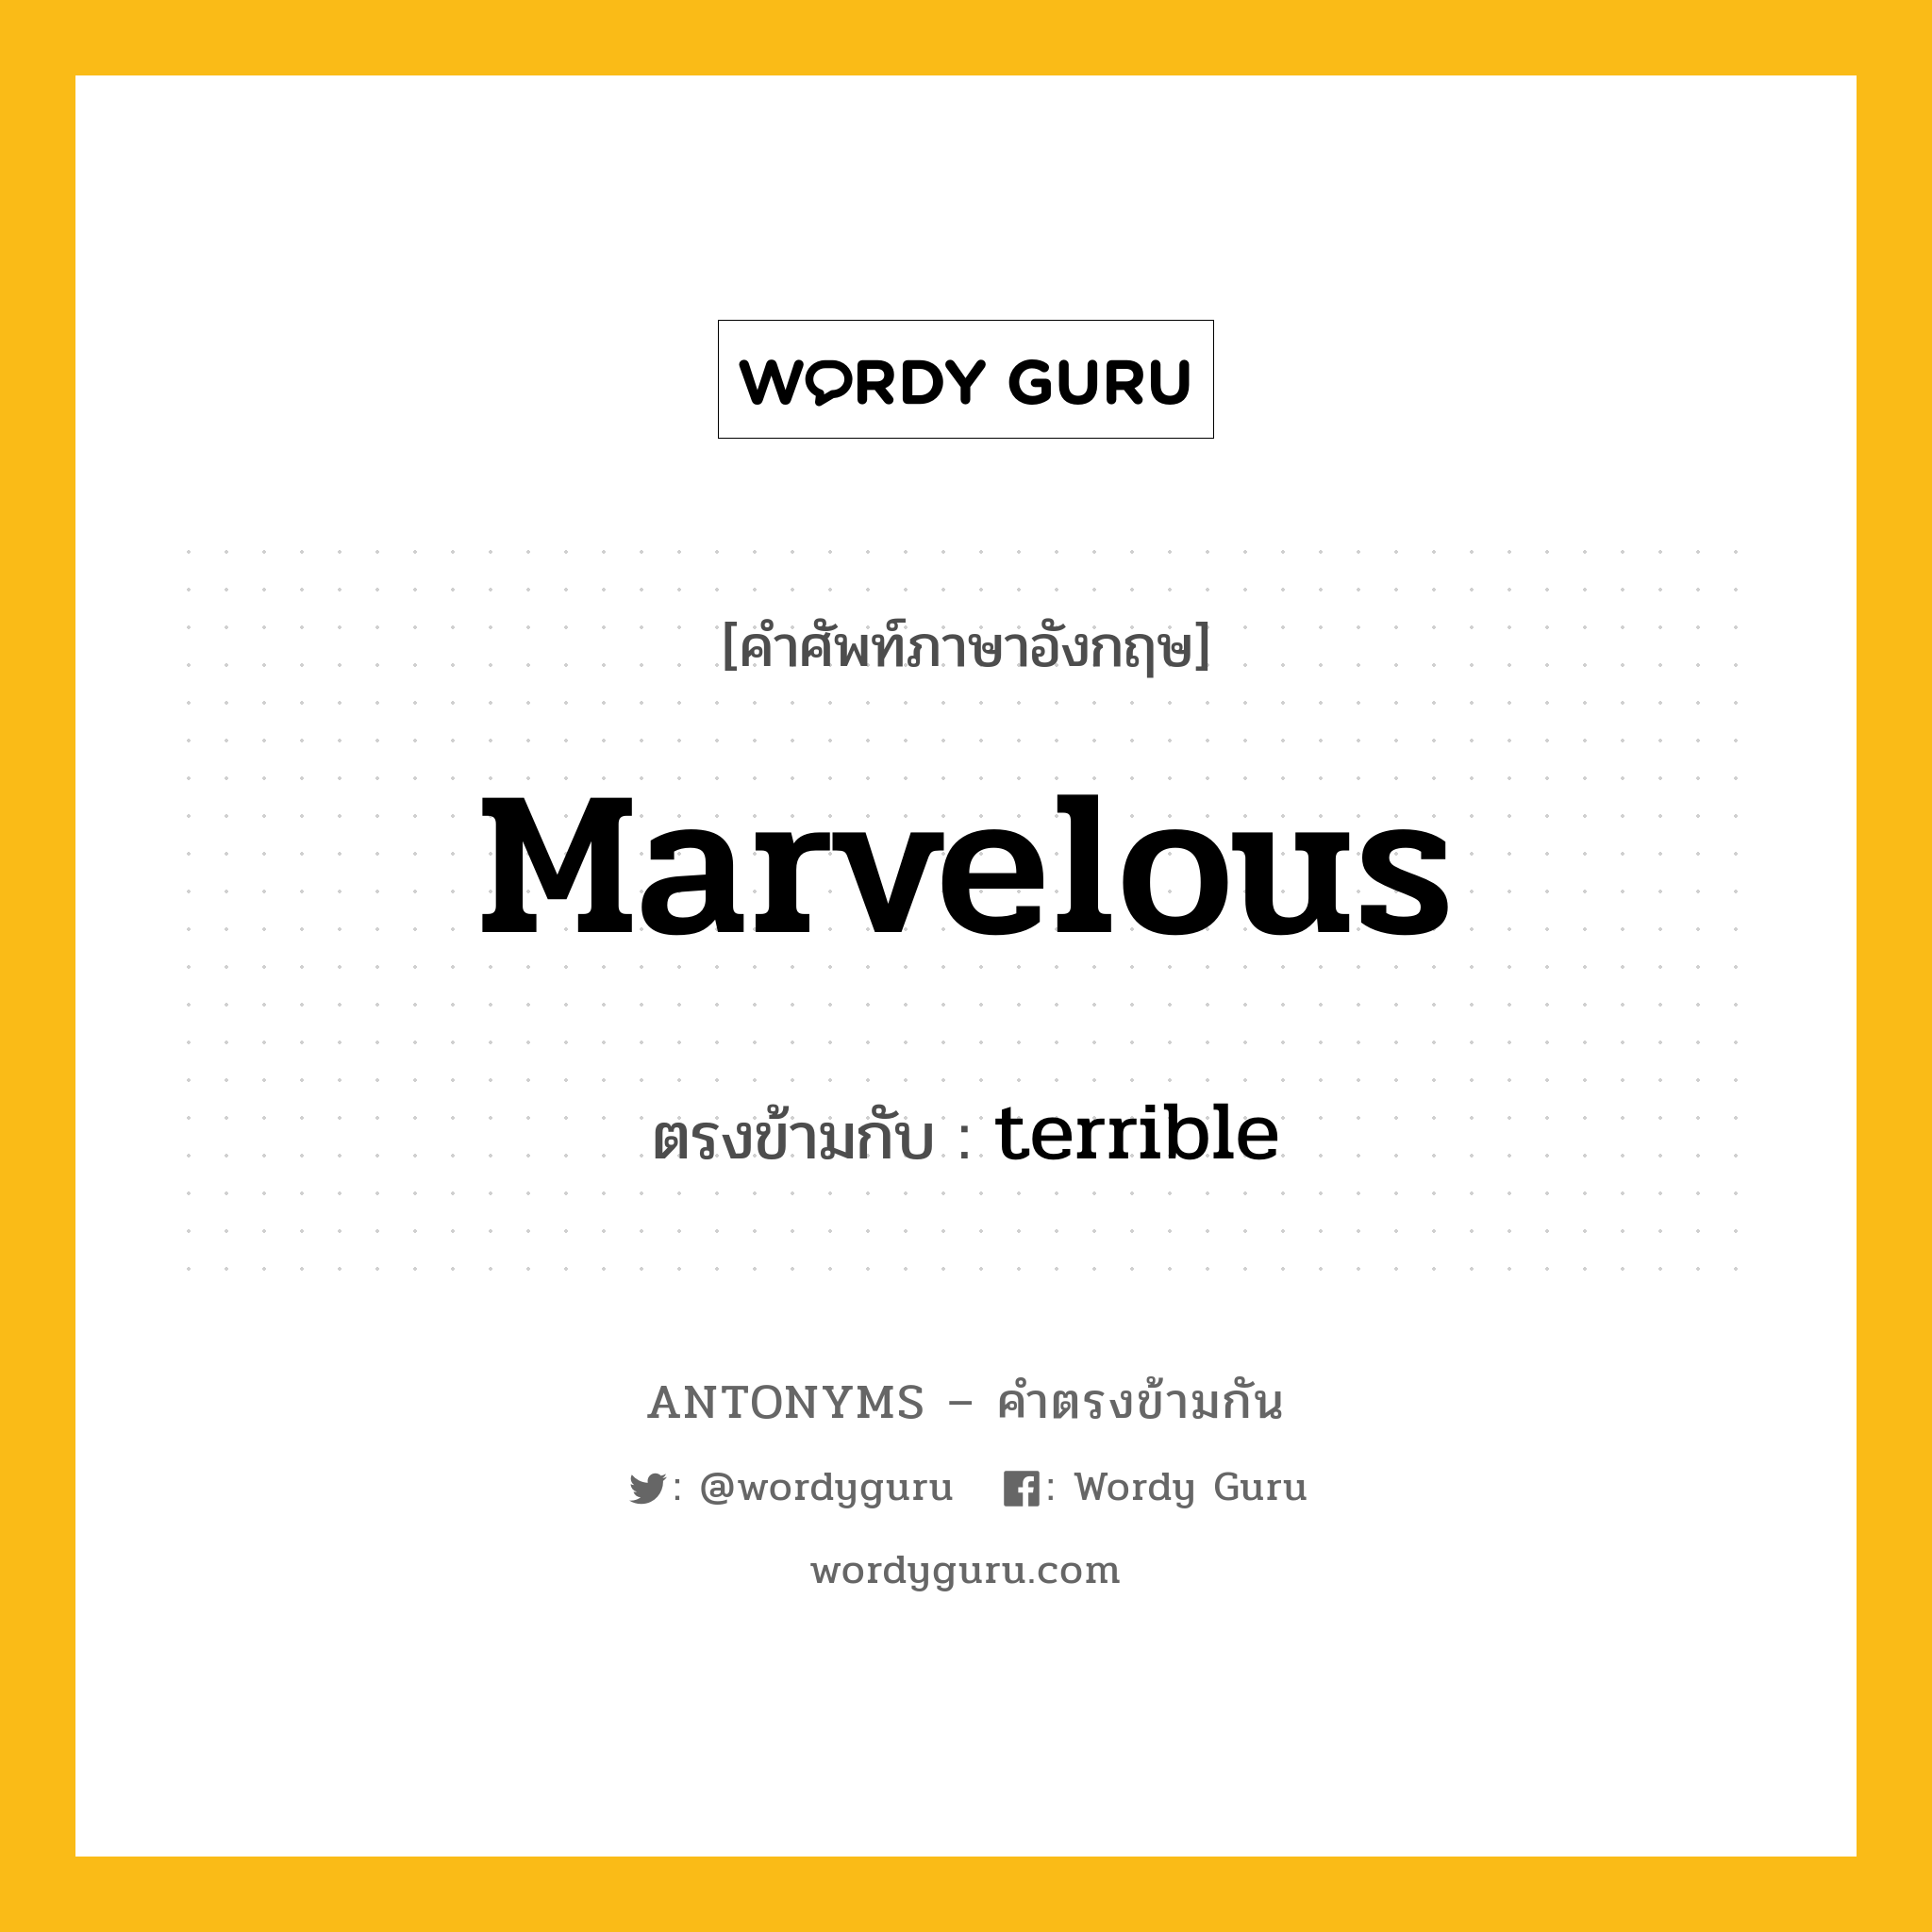 marvelous เป็นคำตรงข้ามกับคำไหนบ้าง?, คำศัพท์ภาษาอังกฤษ marvelous ตรงข้ามกับ terrible หมวด terrible